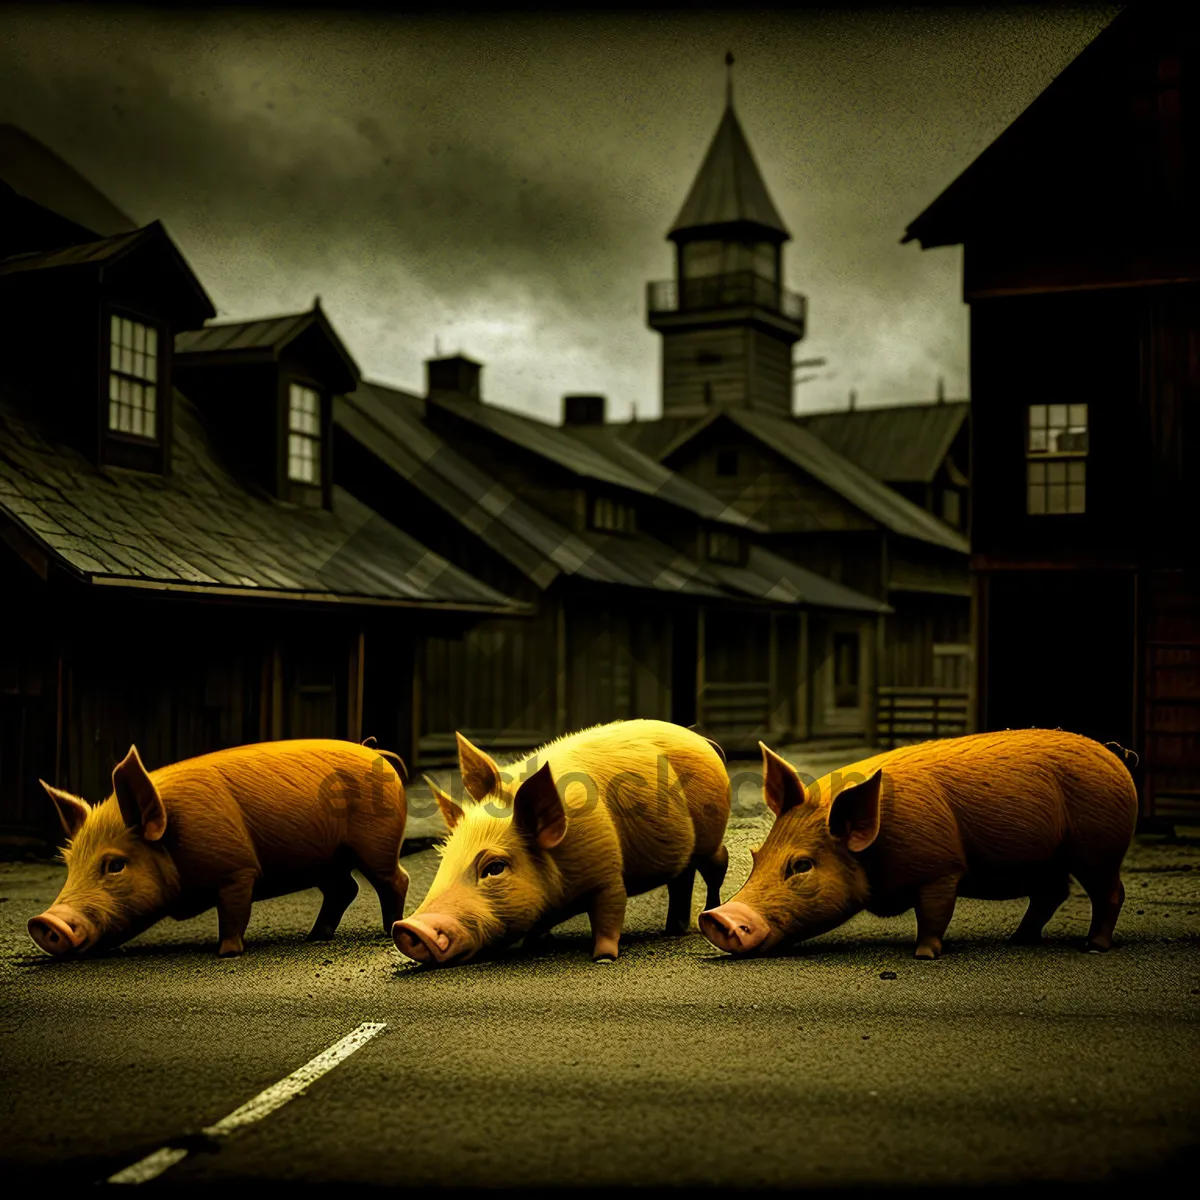 Picture of Wild Swine Grazing in Farm Pasture